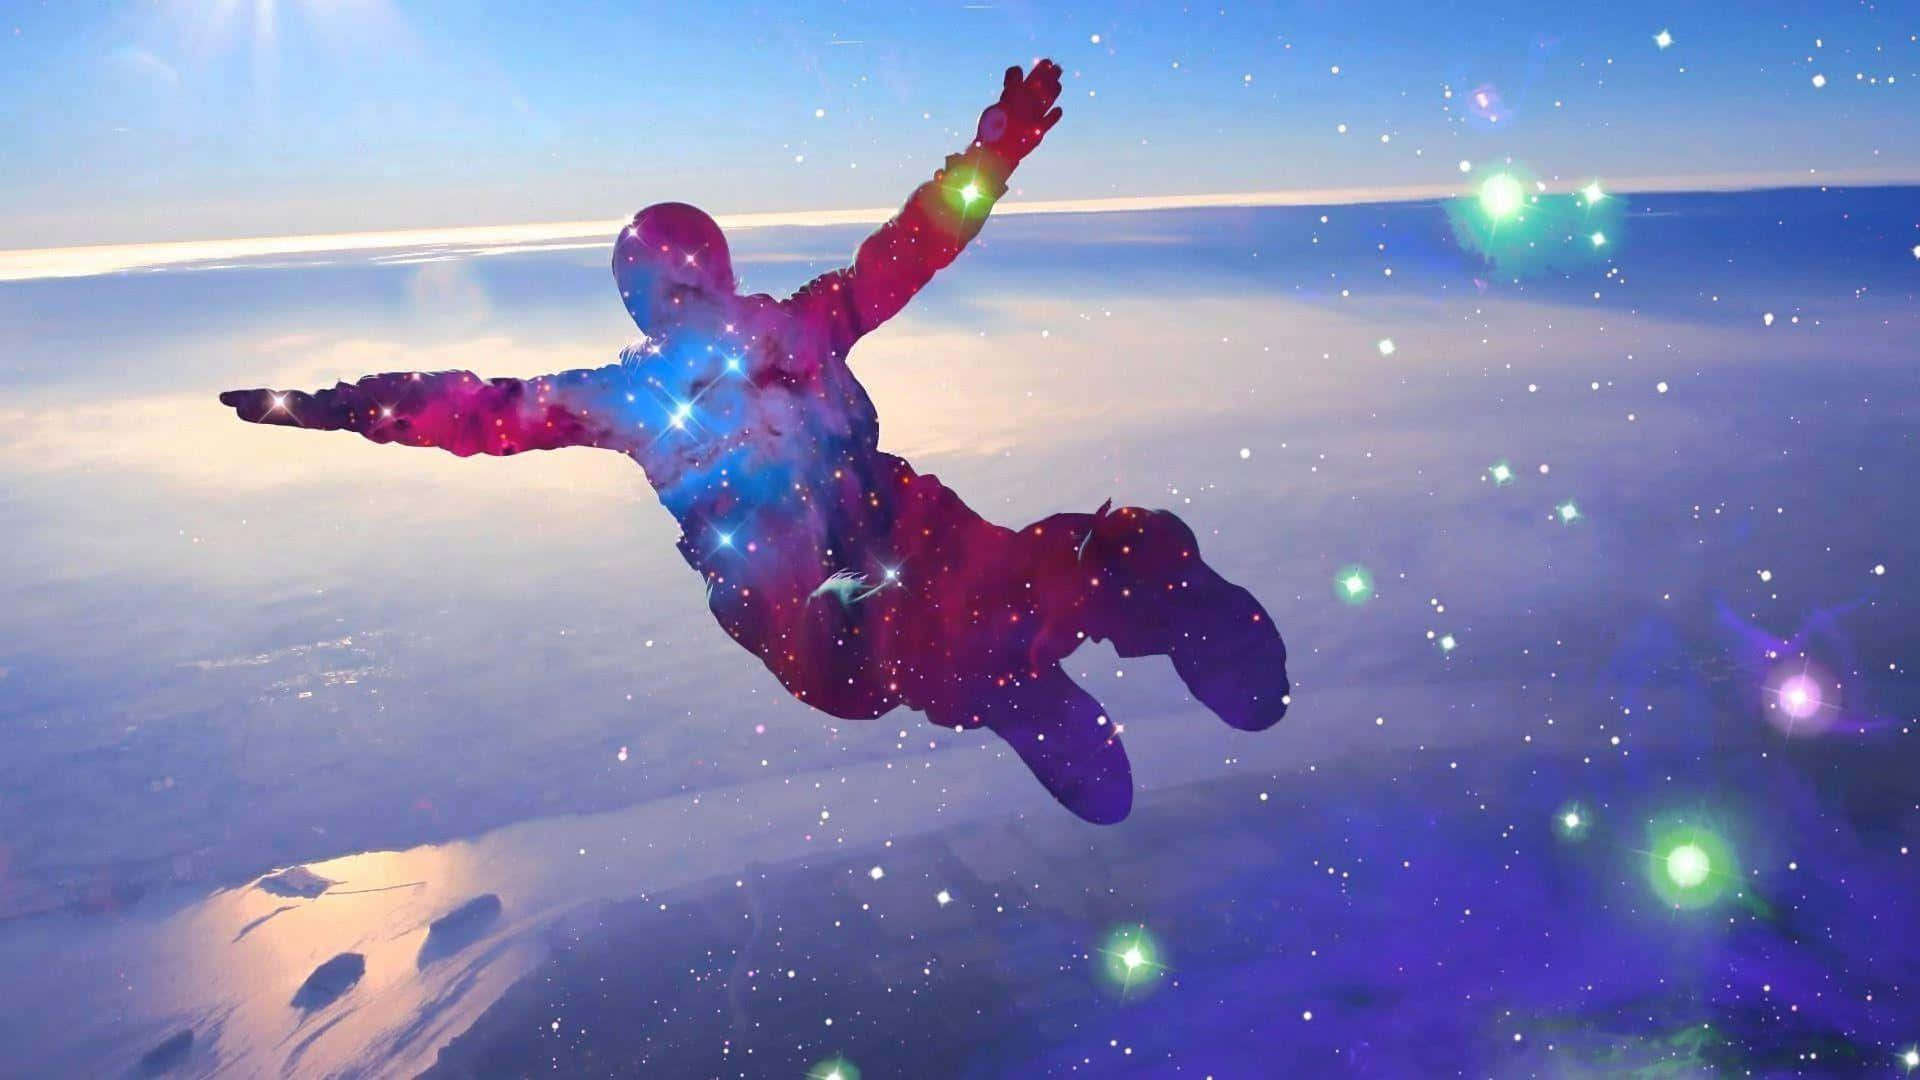 Unapersona Está Saltando En El Aire Con Estrellas De Colores.